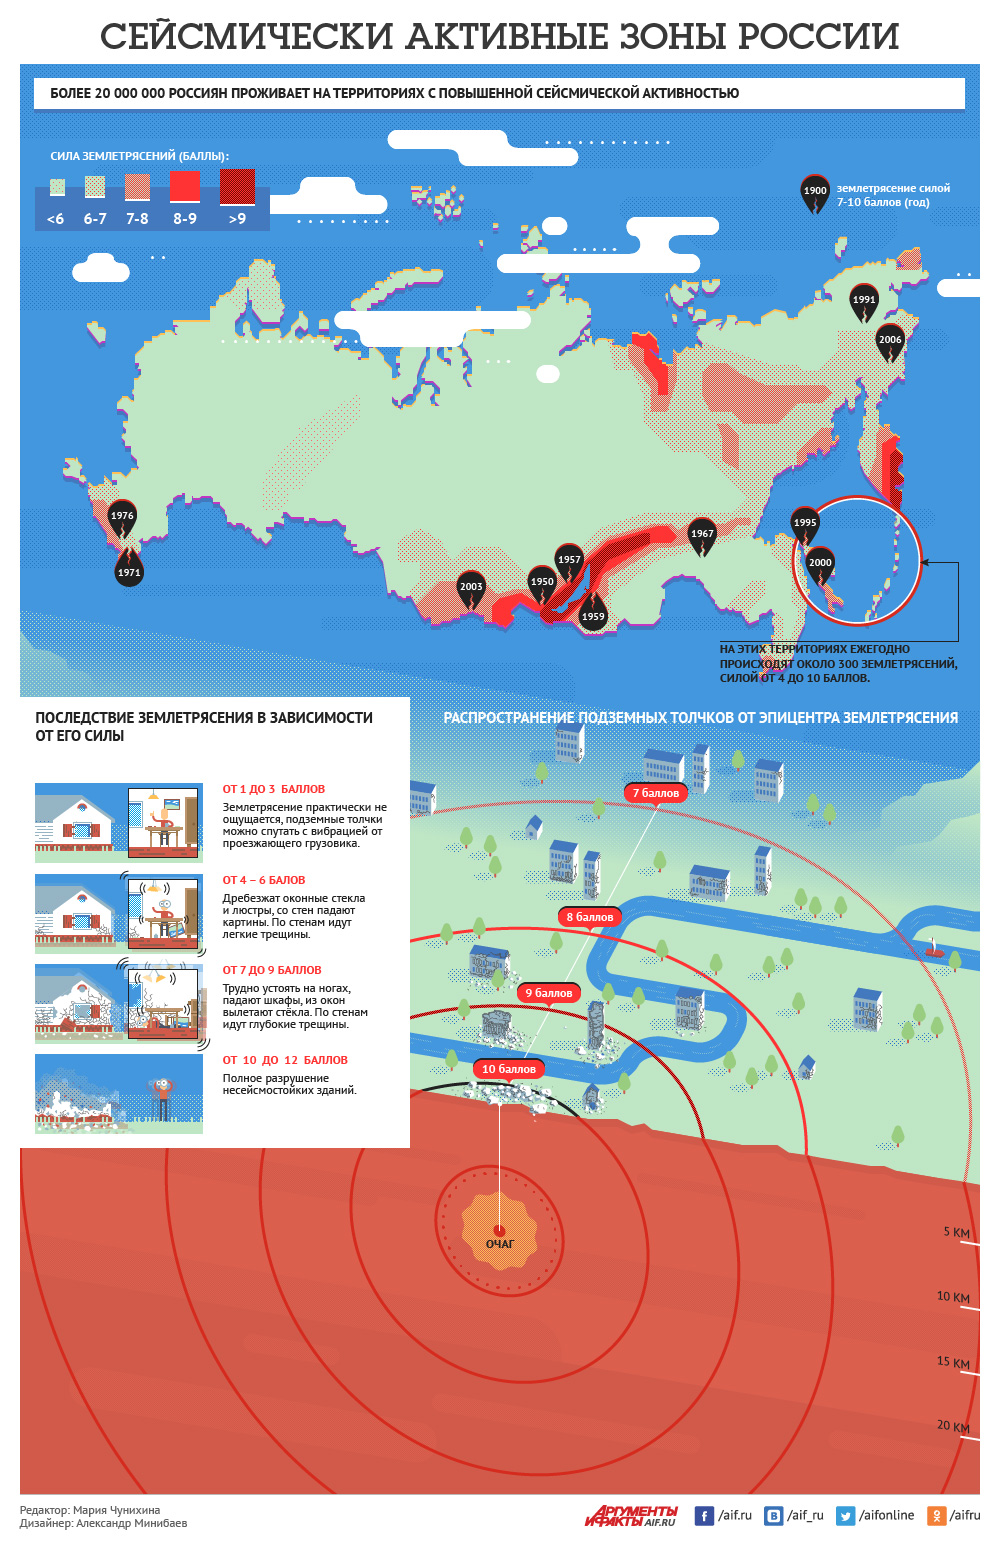 Где землетрясения происходят наиболее часто. Землетрясение инфографика. Сейсмические активные зоны. Сейсмические зоны РФ. Сейсмические активные зоны России.